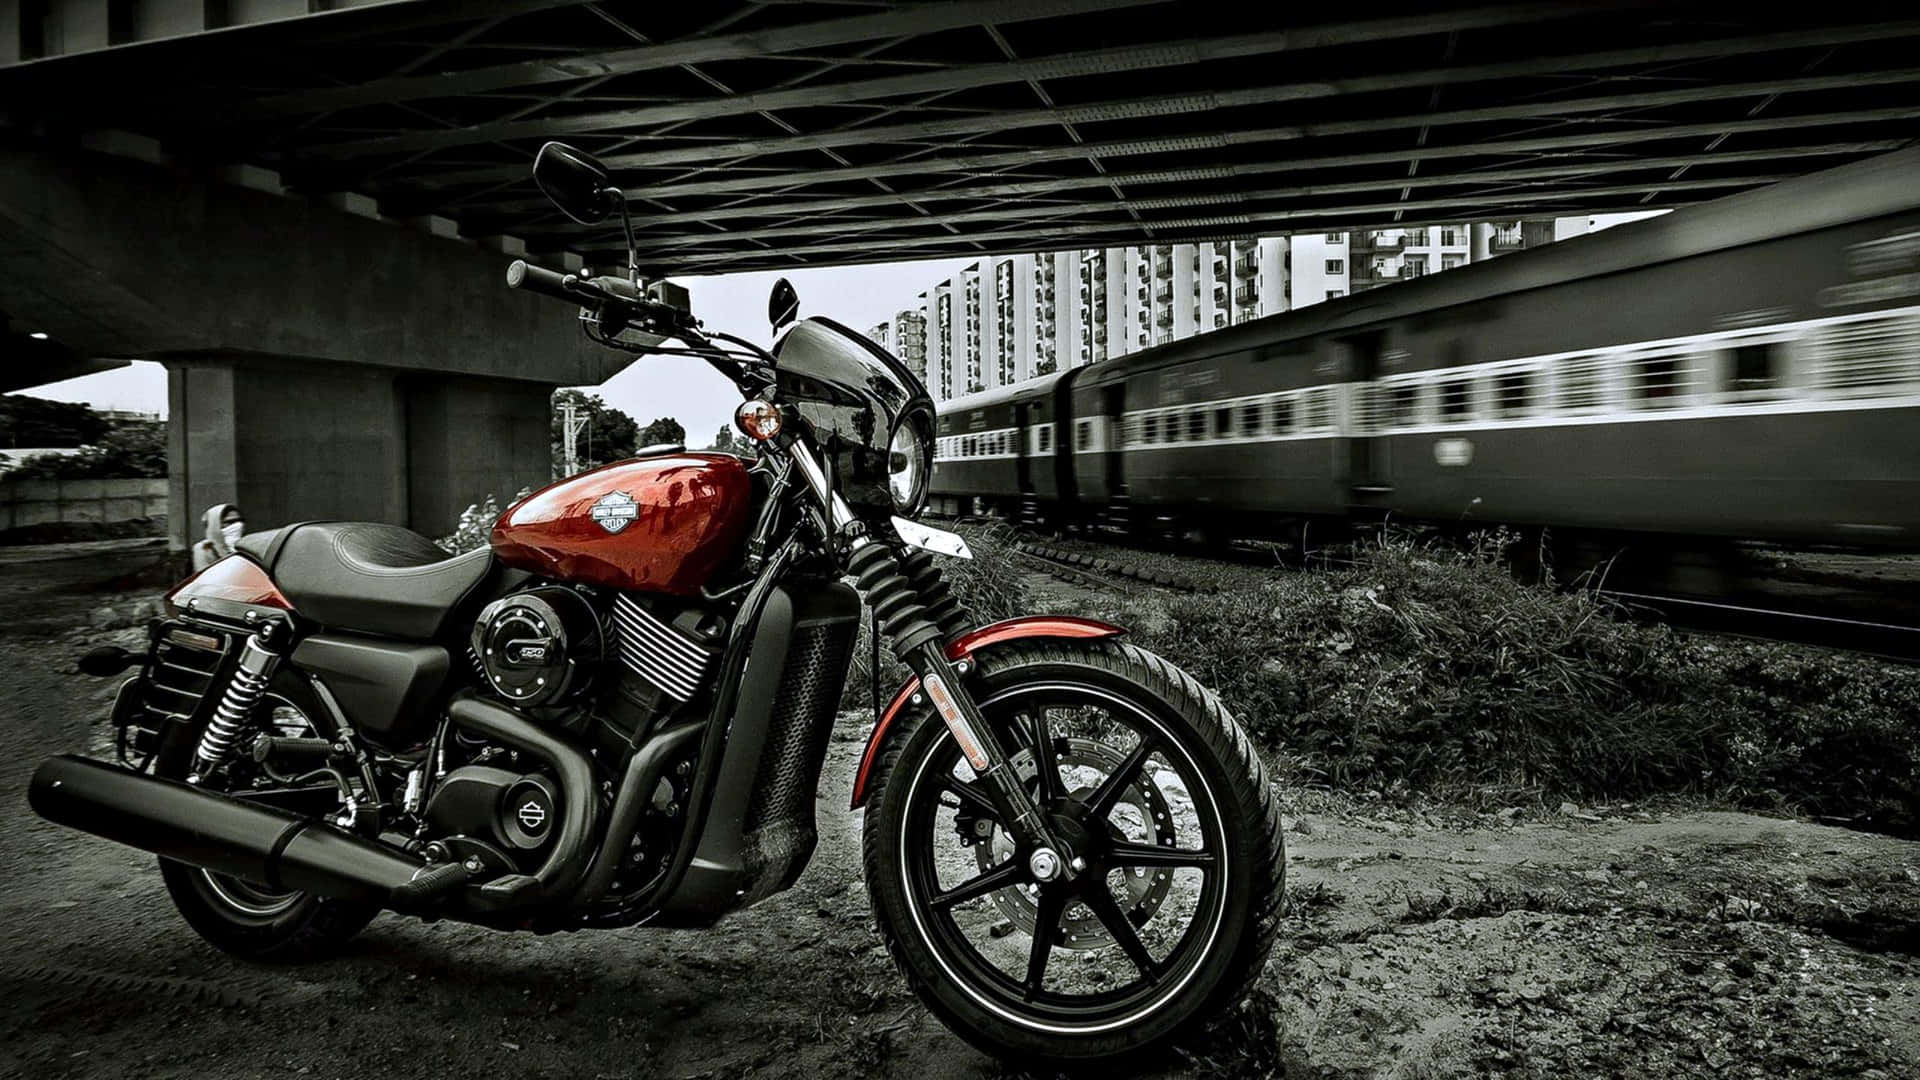 Harleydavidson-motor I Svart Bakgrund.